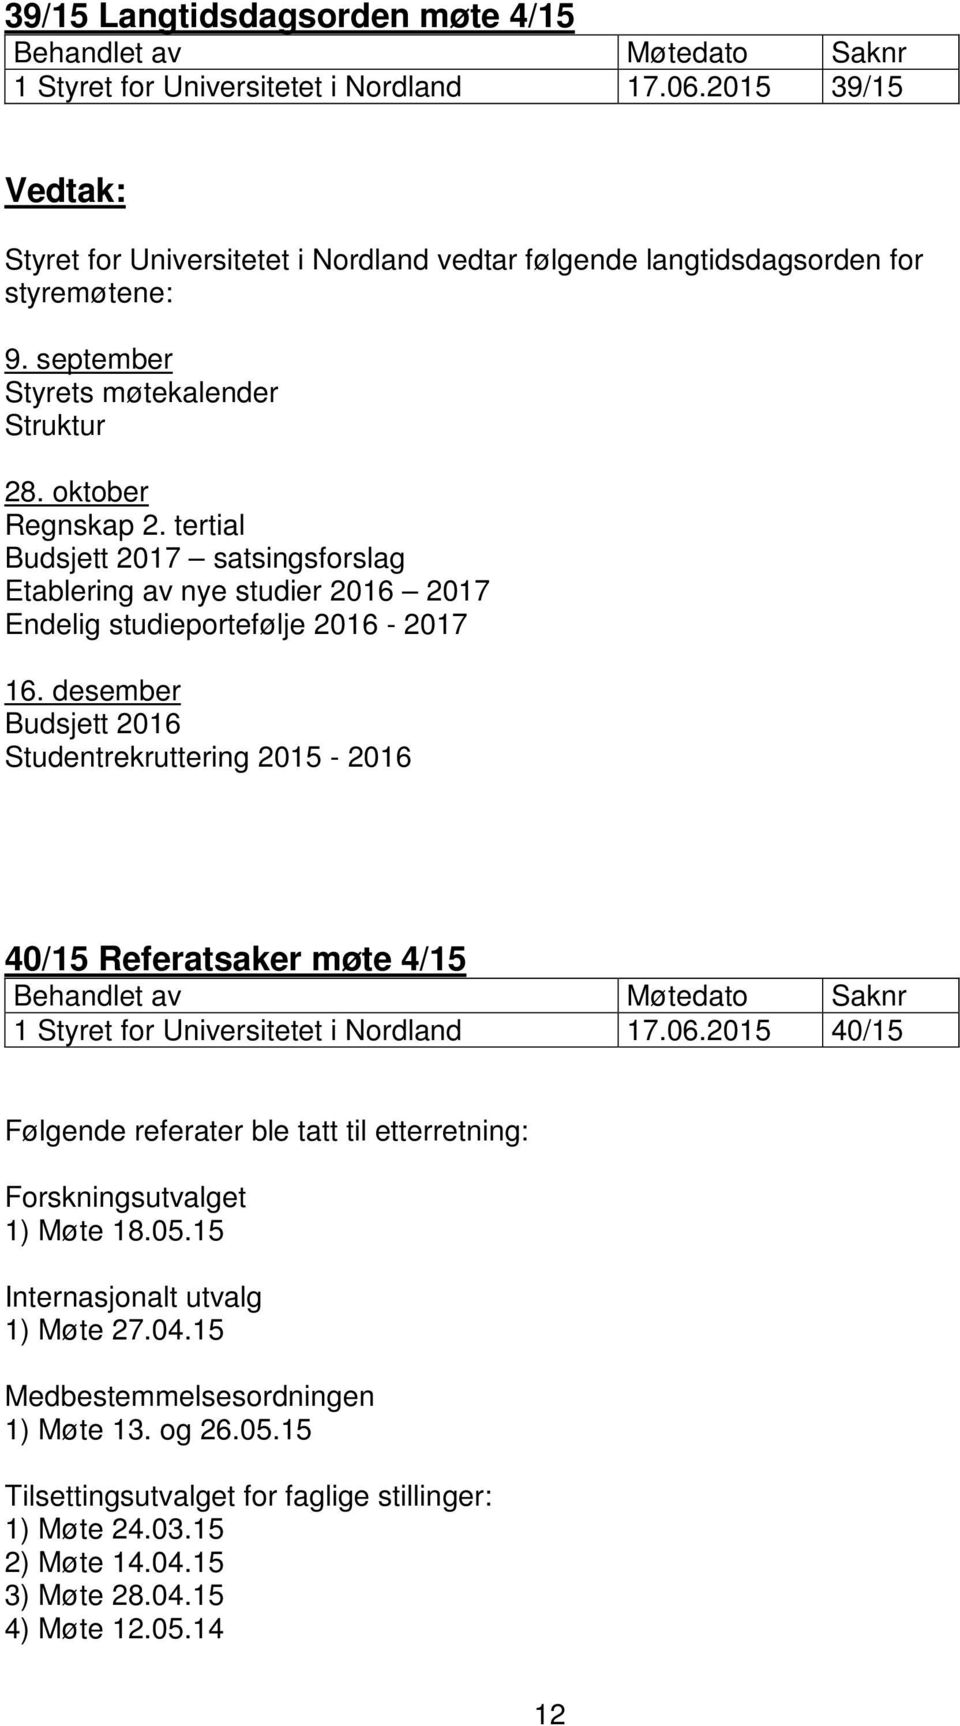 desember Budsjett 2016 Studentrekruttering 2015-2016 40/15 Referatsaker møte 4/15 1 Styret for Universitetet i Nordland 17.06.